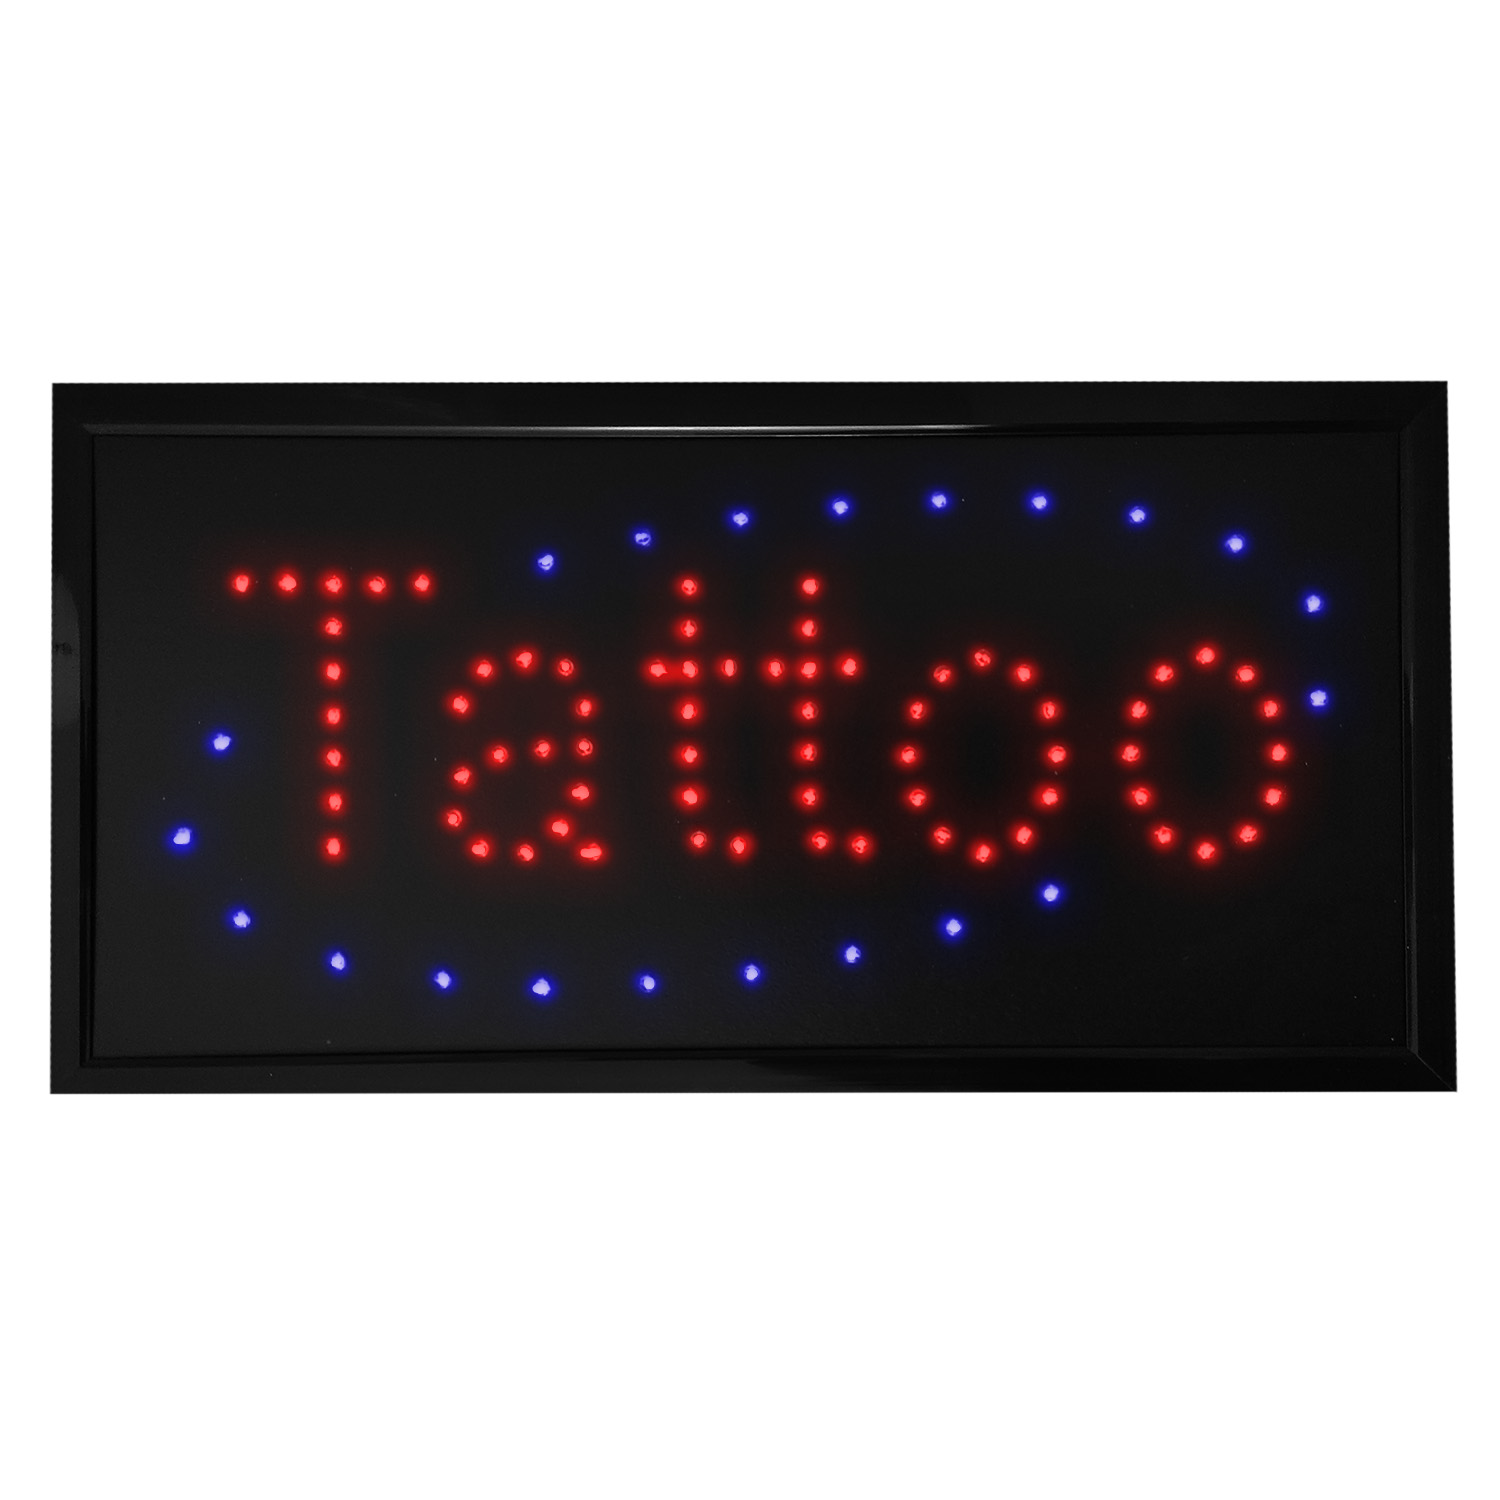 LED Open Geöffnet Schild Leuchtschild Tattoo Leuchtreklame Display Werbung 